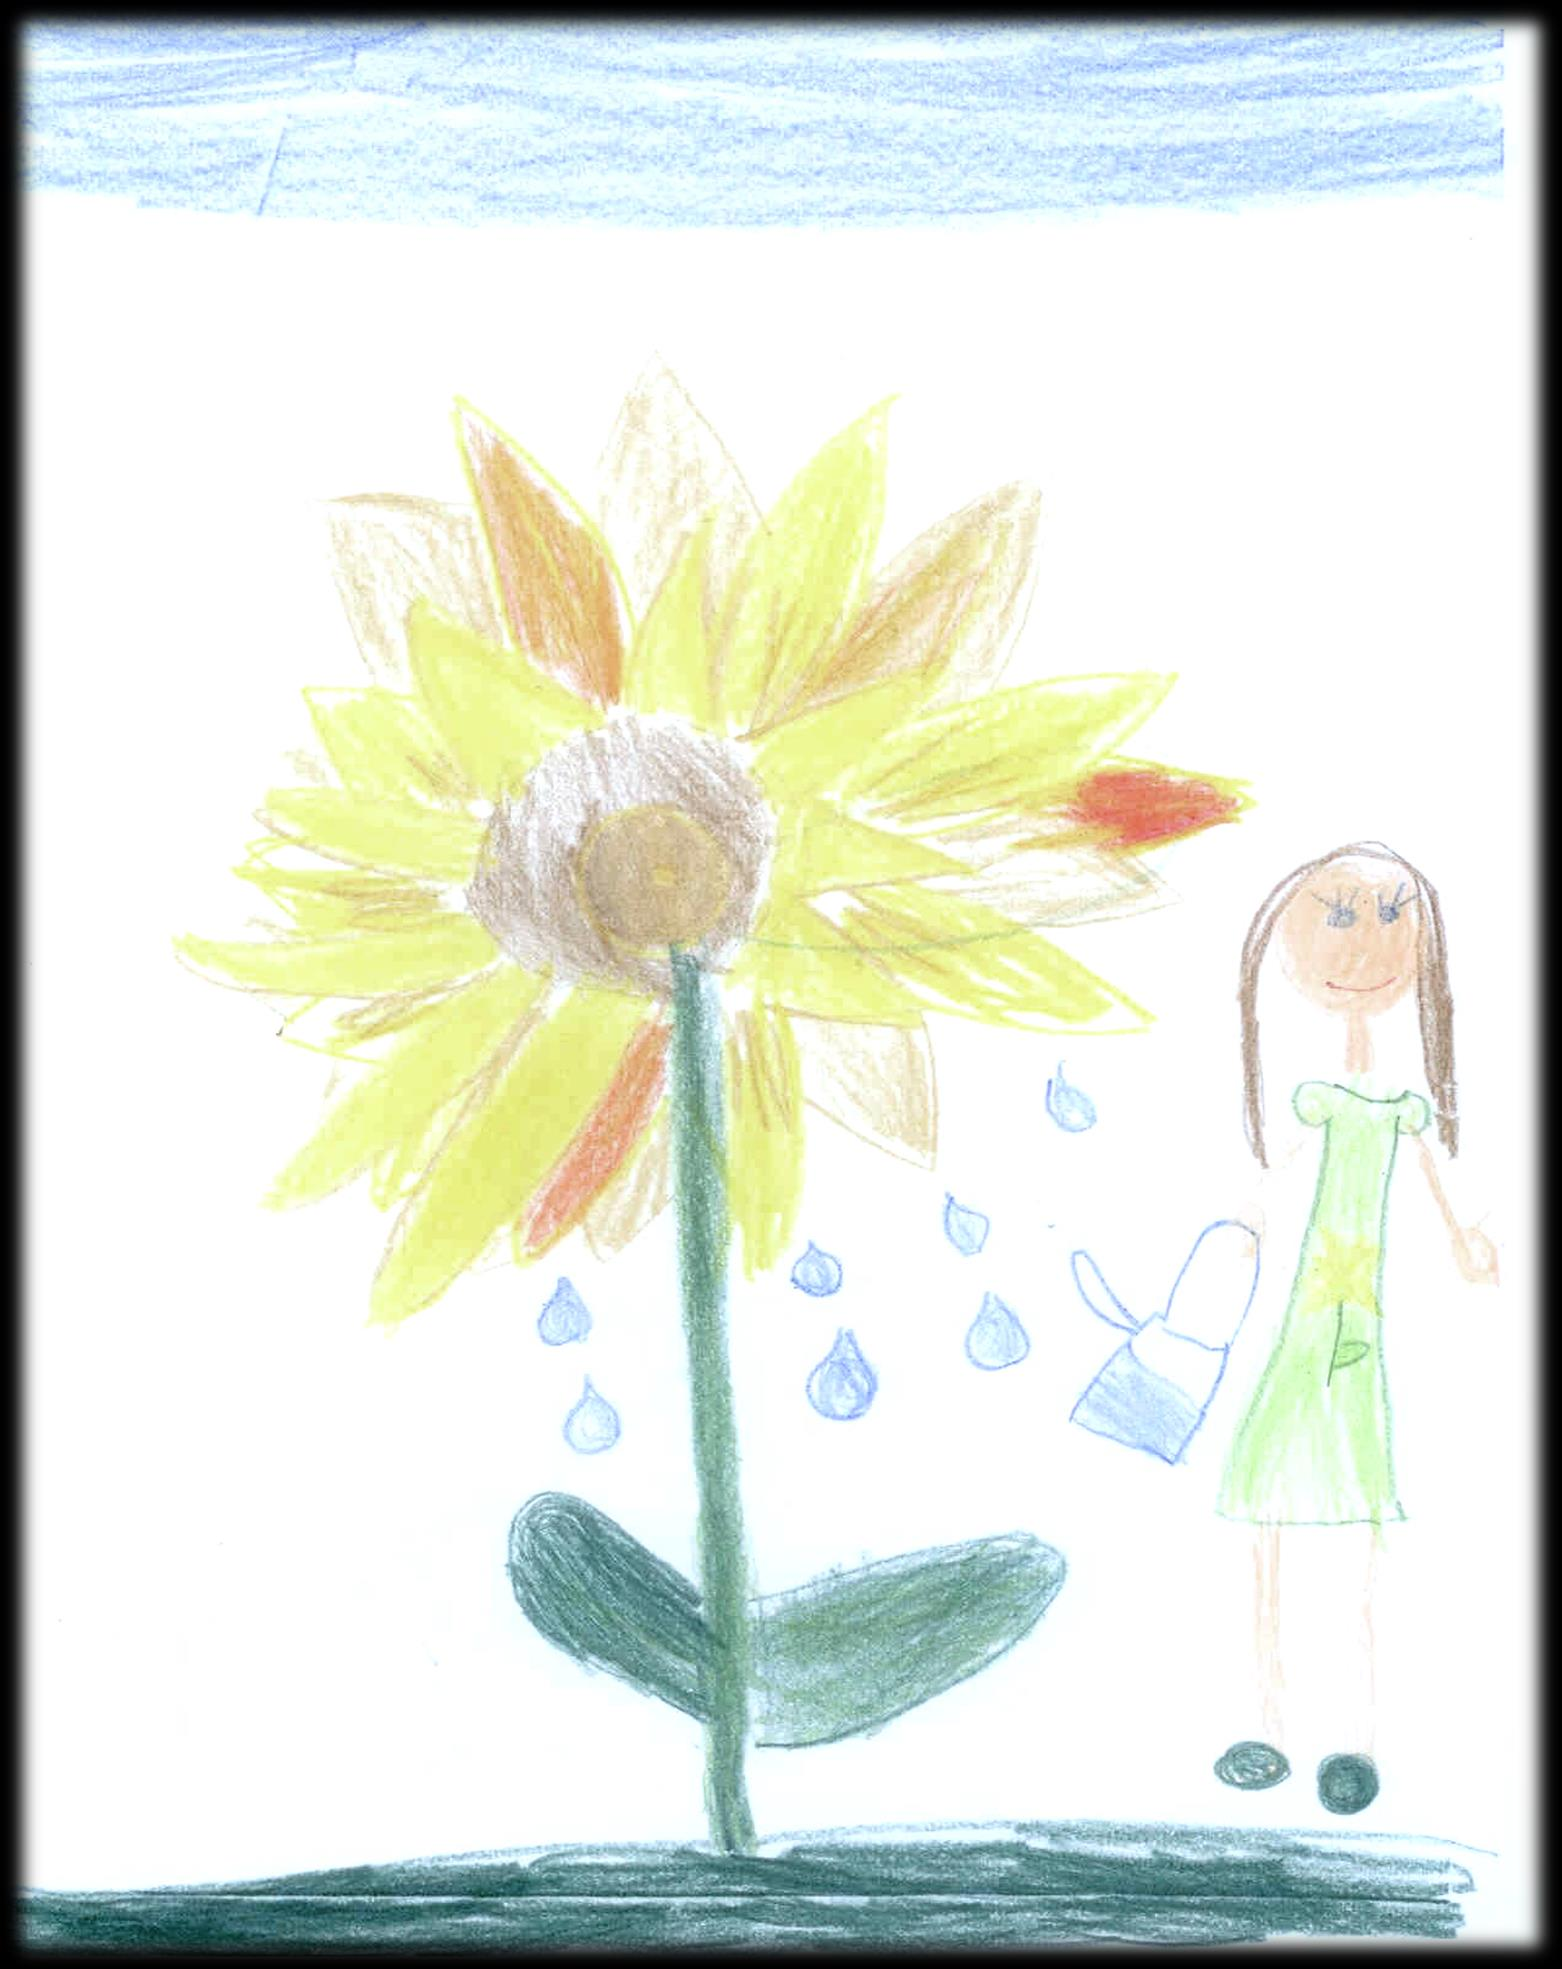 Jedes Kind ist wie eine Blume: Es braucht viel Wärme, viel Licht, viel Vertrauen und viel Zeit um aufzublühen.